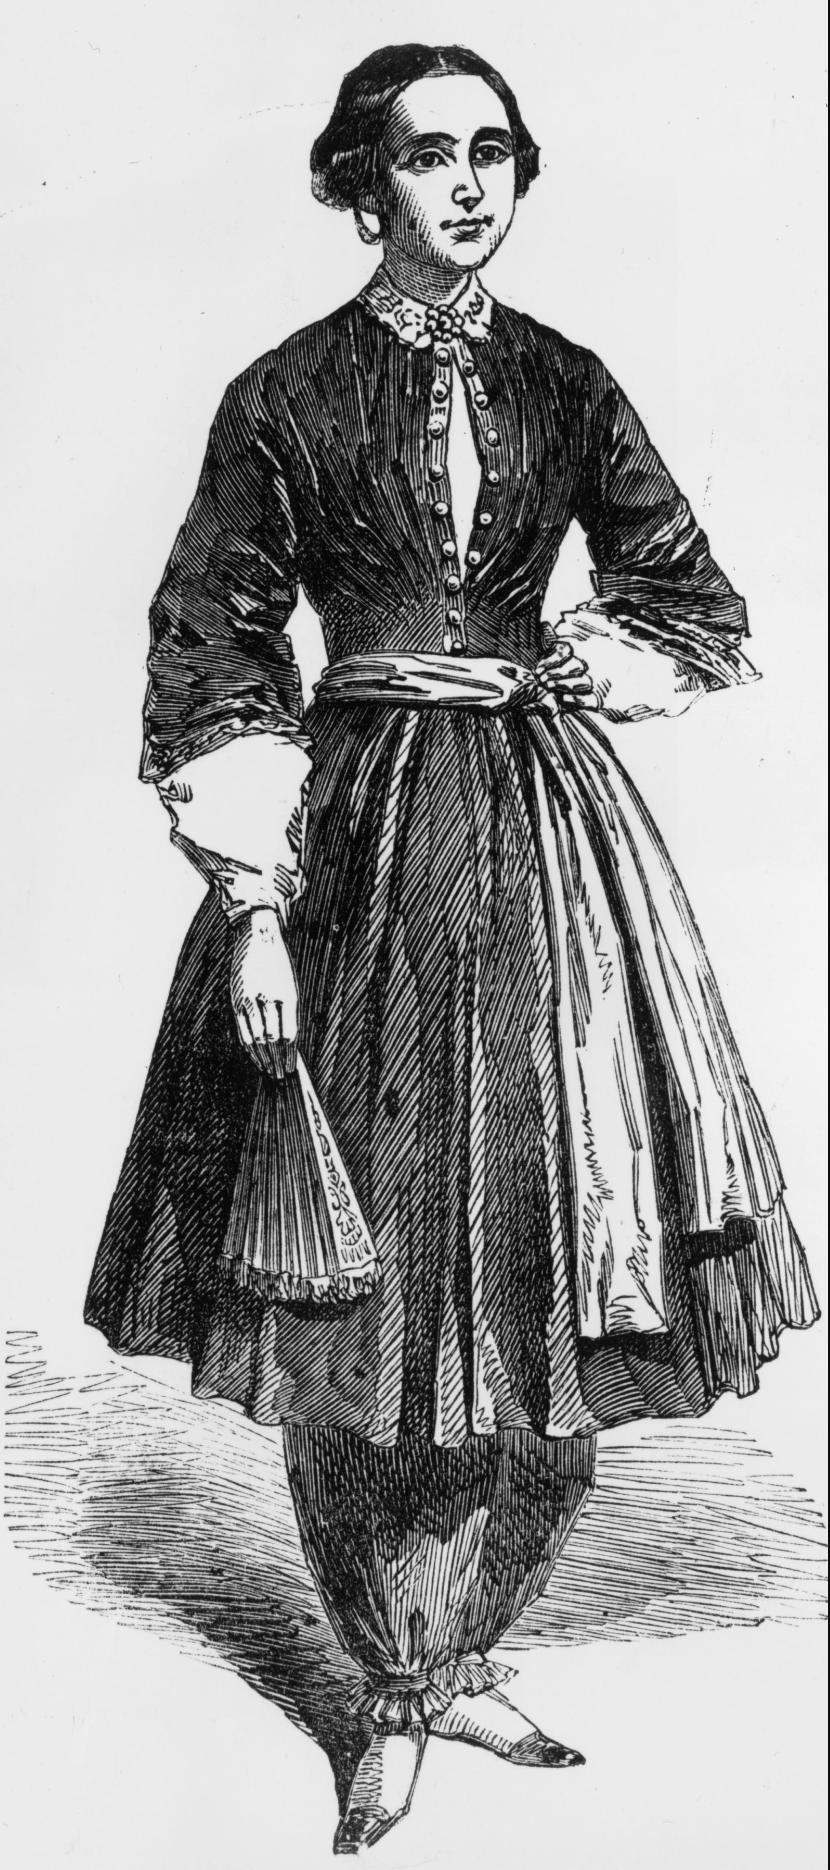 자신이 디자인한 ‘블루머’라고 불리는 바지를 입고 여성의 권리와 복장 개혁을 주장했던 아멜리아 블루머. ⓒ getty